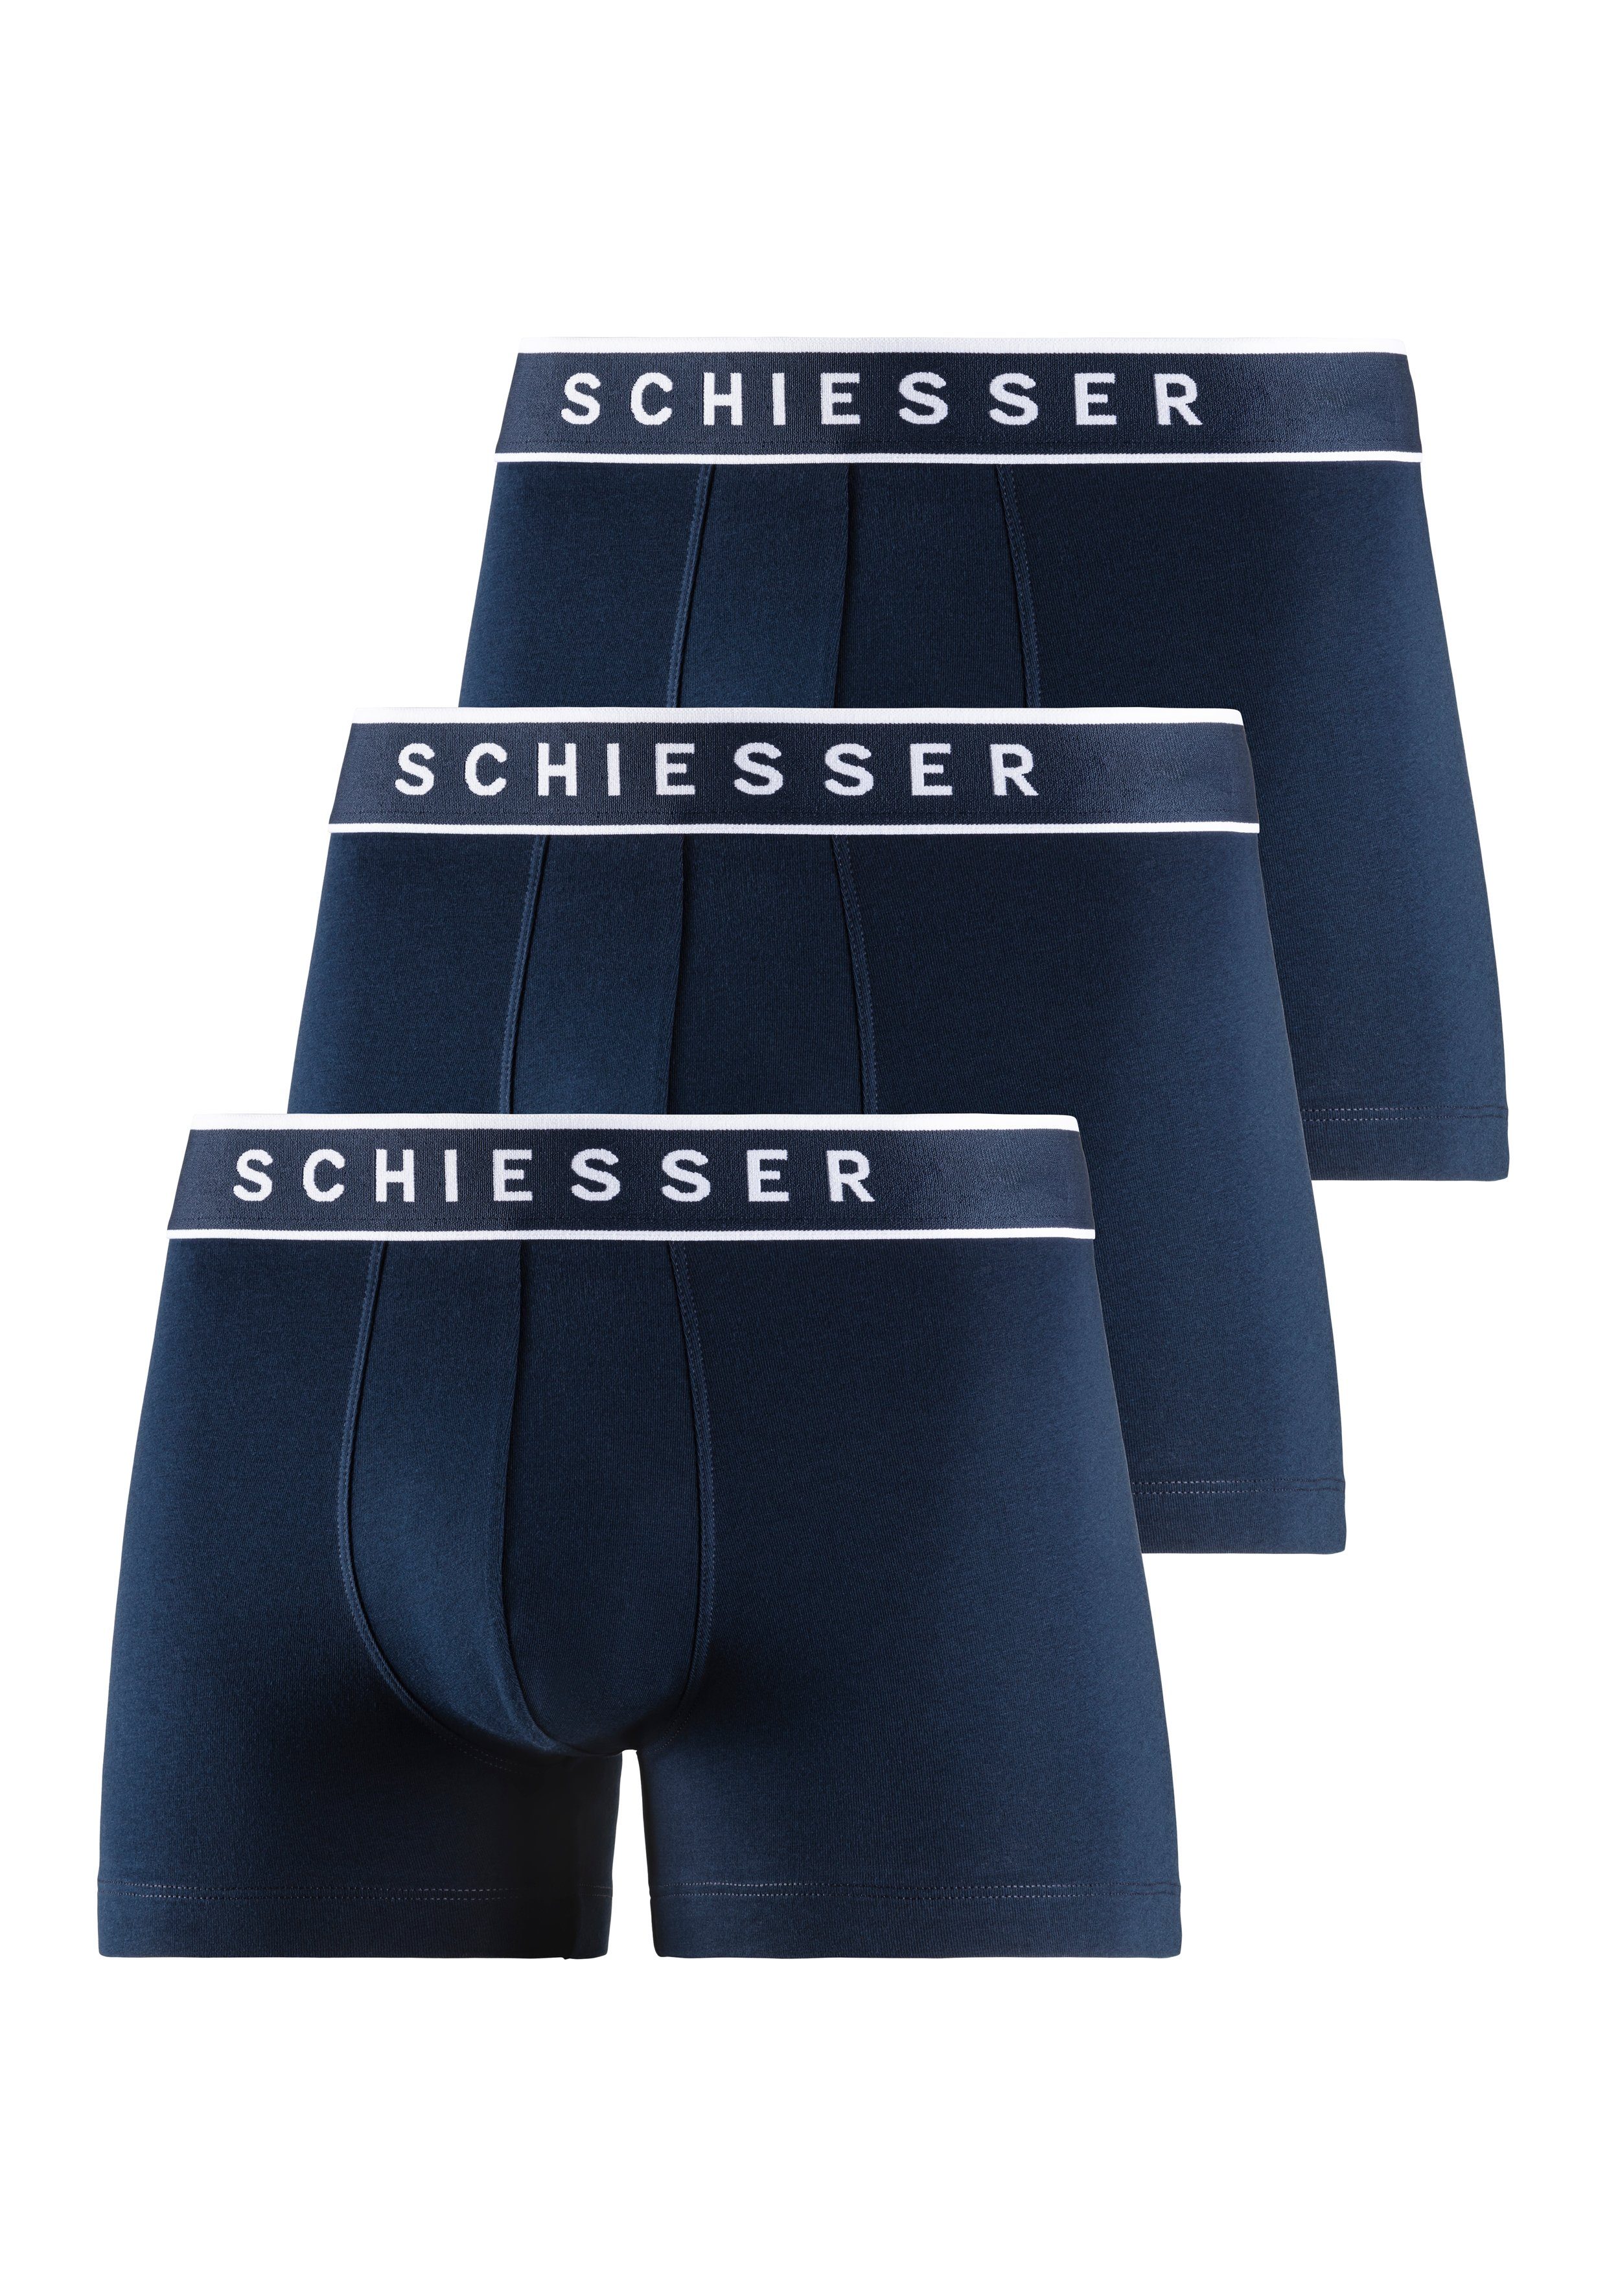 Schiesser Boxer (3er-Pack) navy, navy, Logobund navy mit